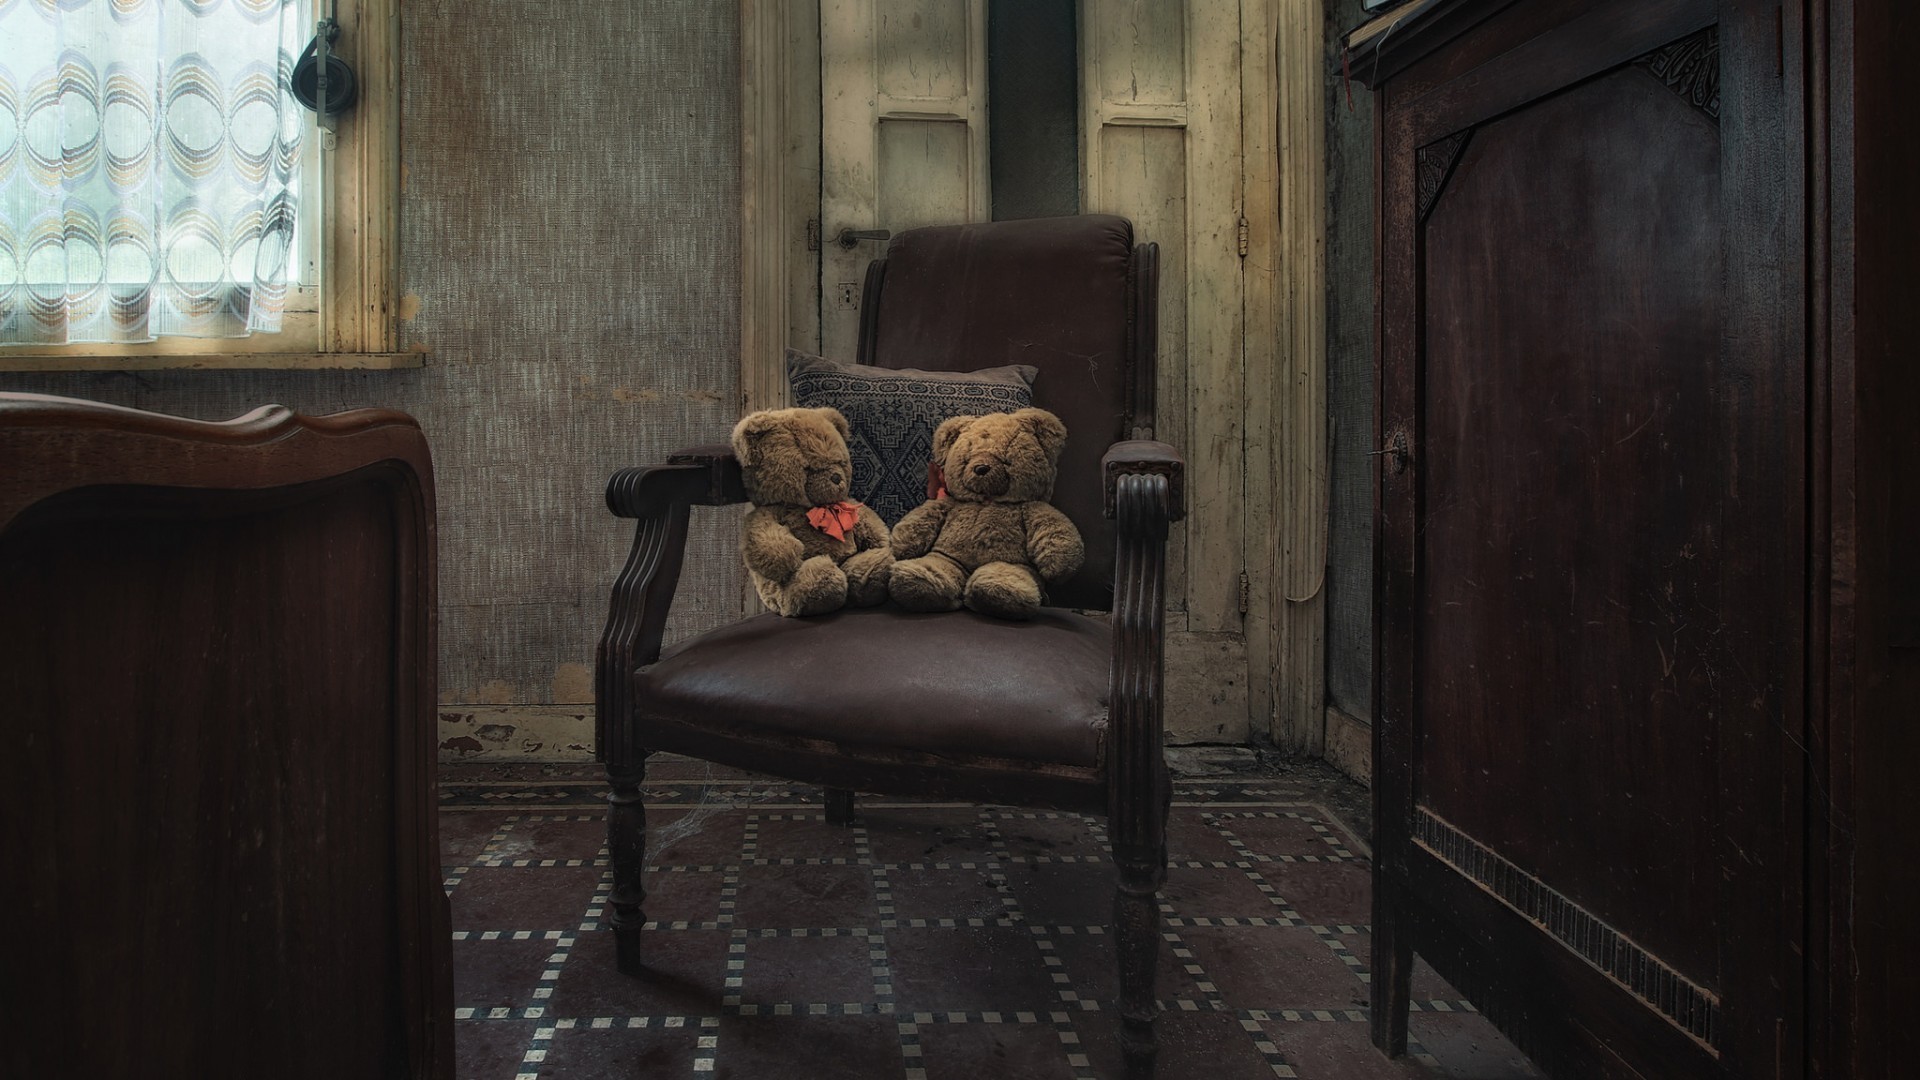 Interior Room Chair Wall Cupboard Teddy Bears Pillow Window Door Abandoned 1920x1080